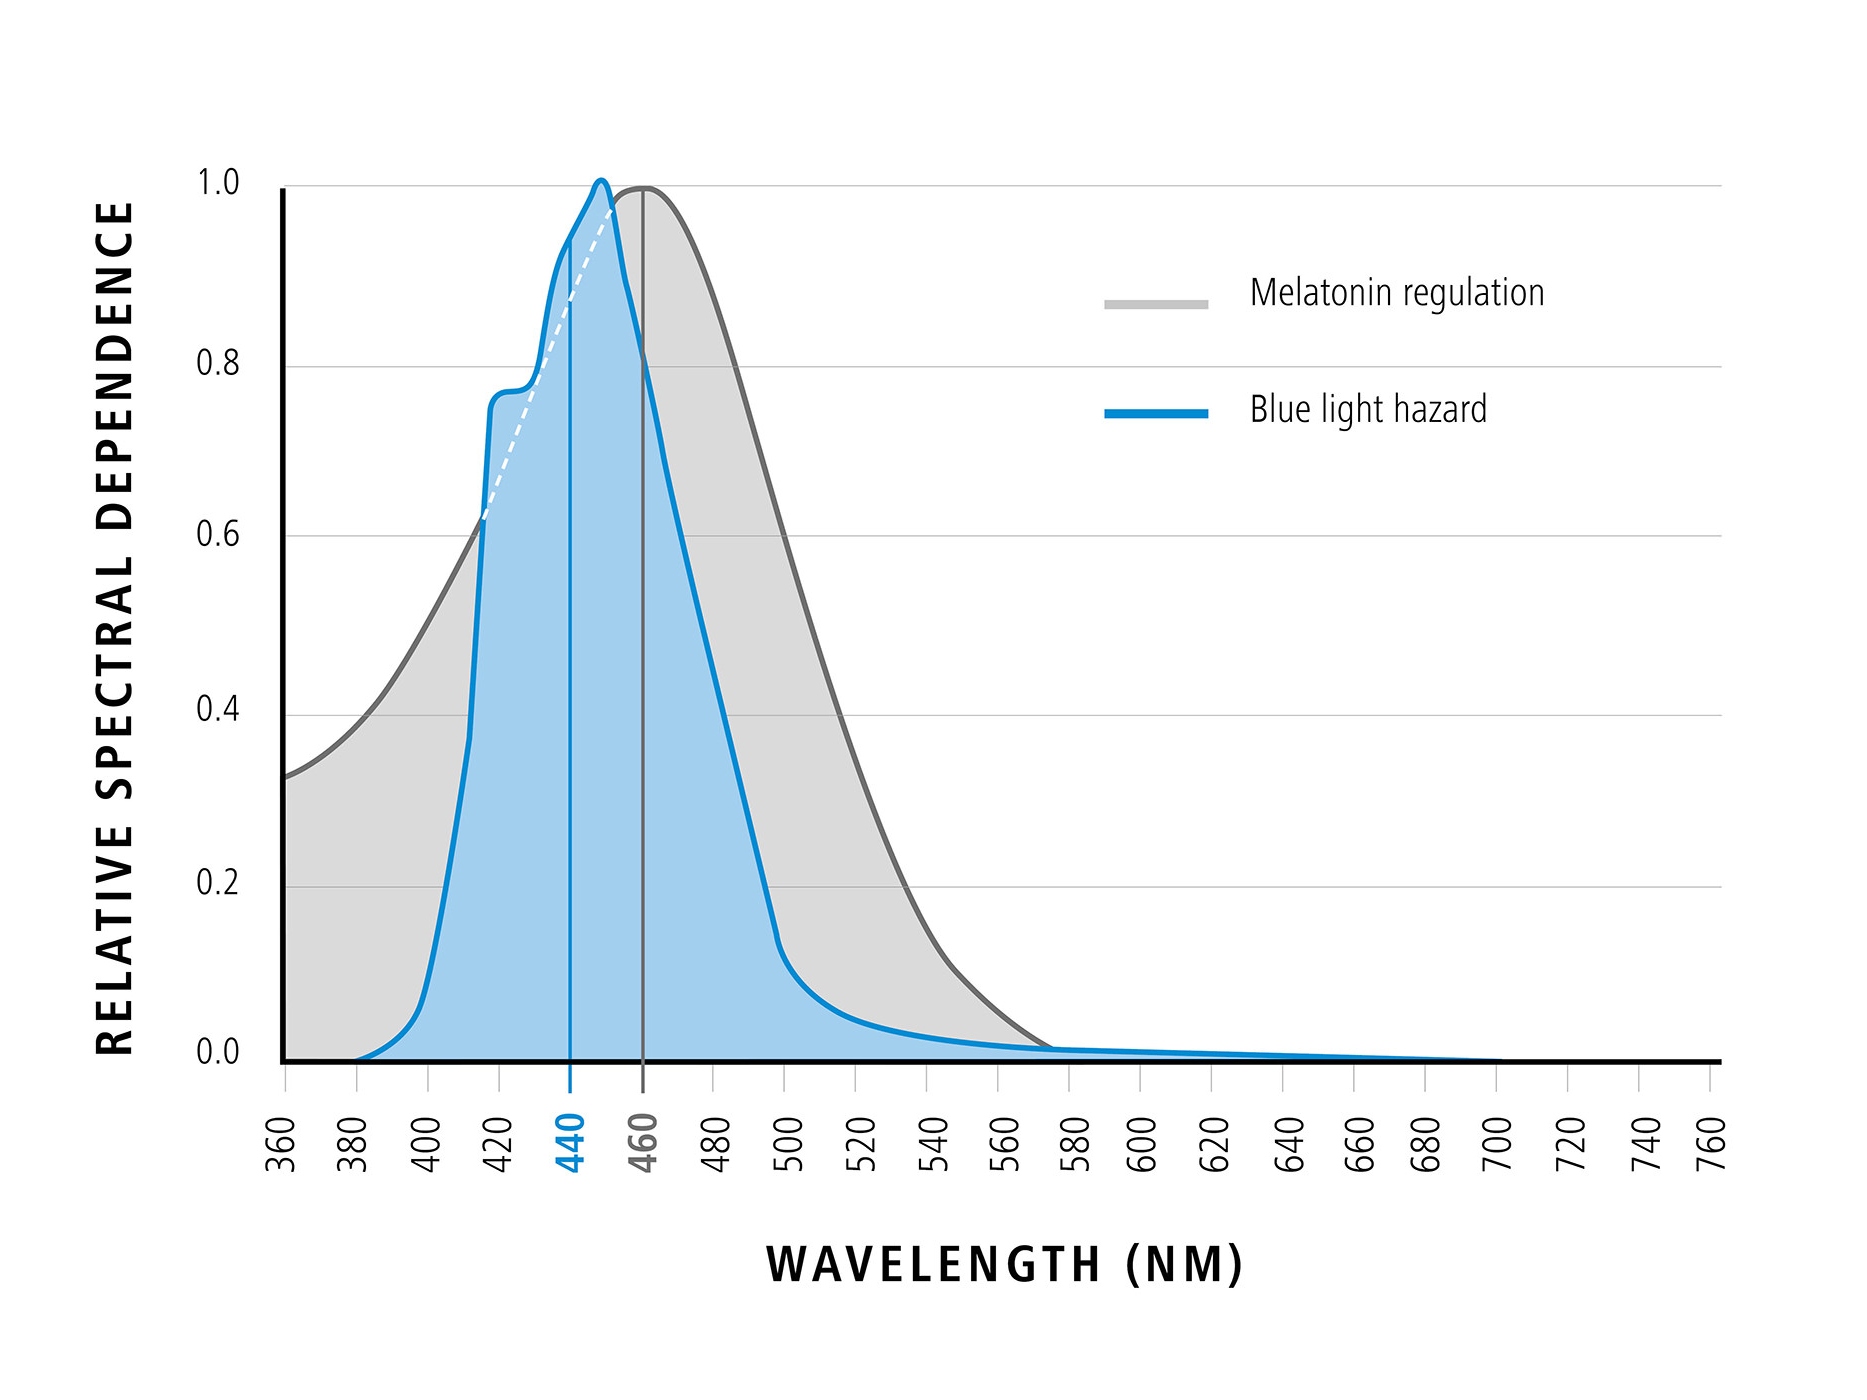 Graf zobrazující vlnovou délku modrého světla v poměru k relativní spektrální závislosti (pozitivní účinky modrého světla). 